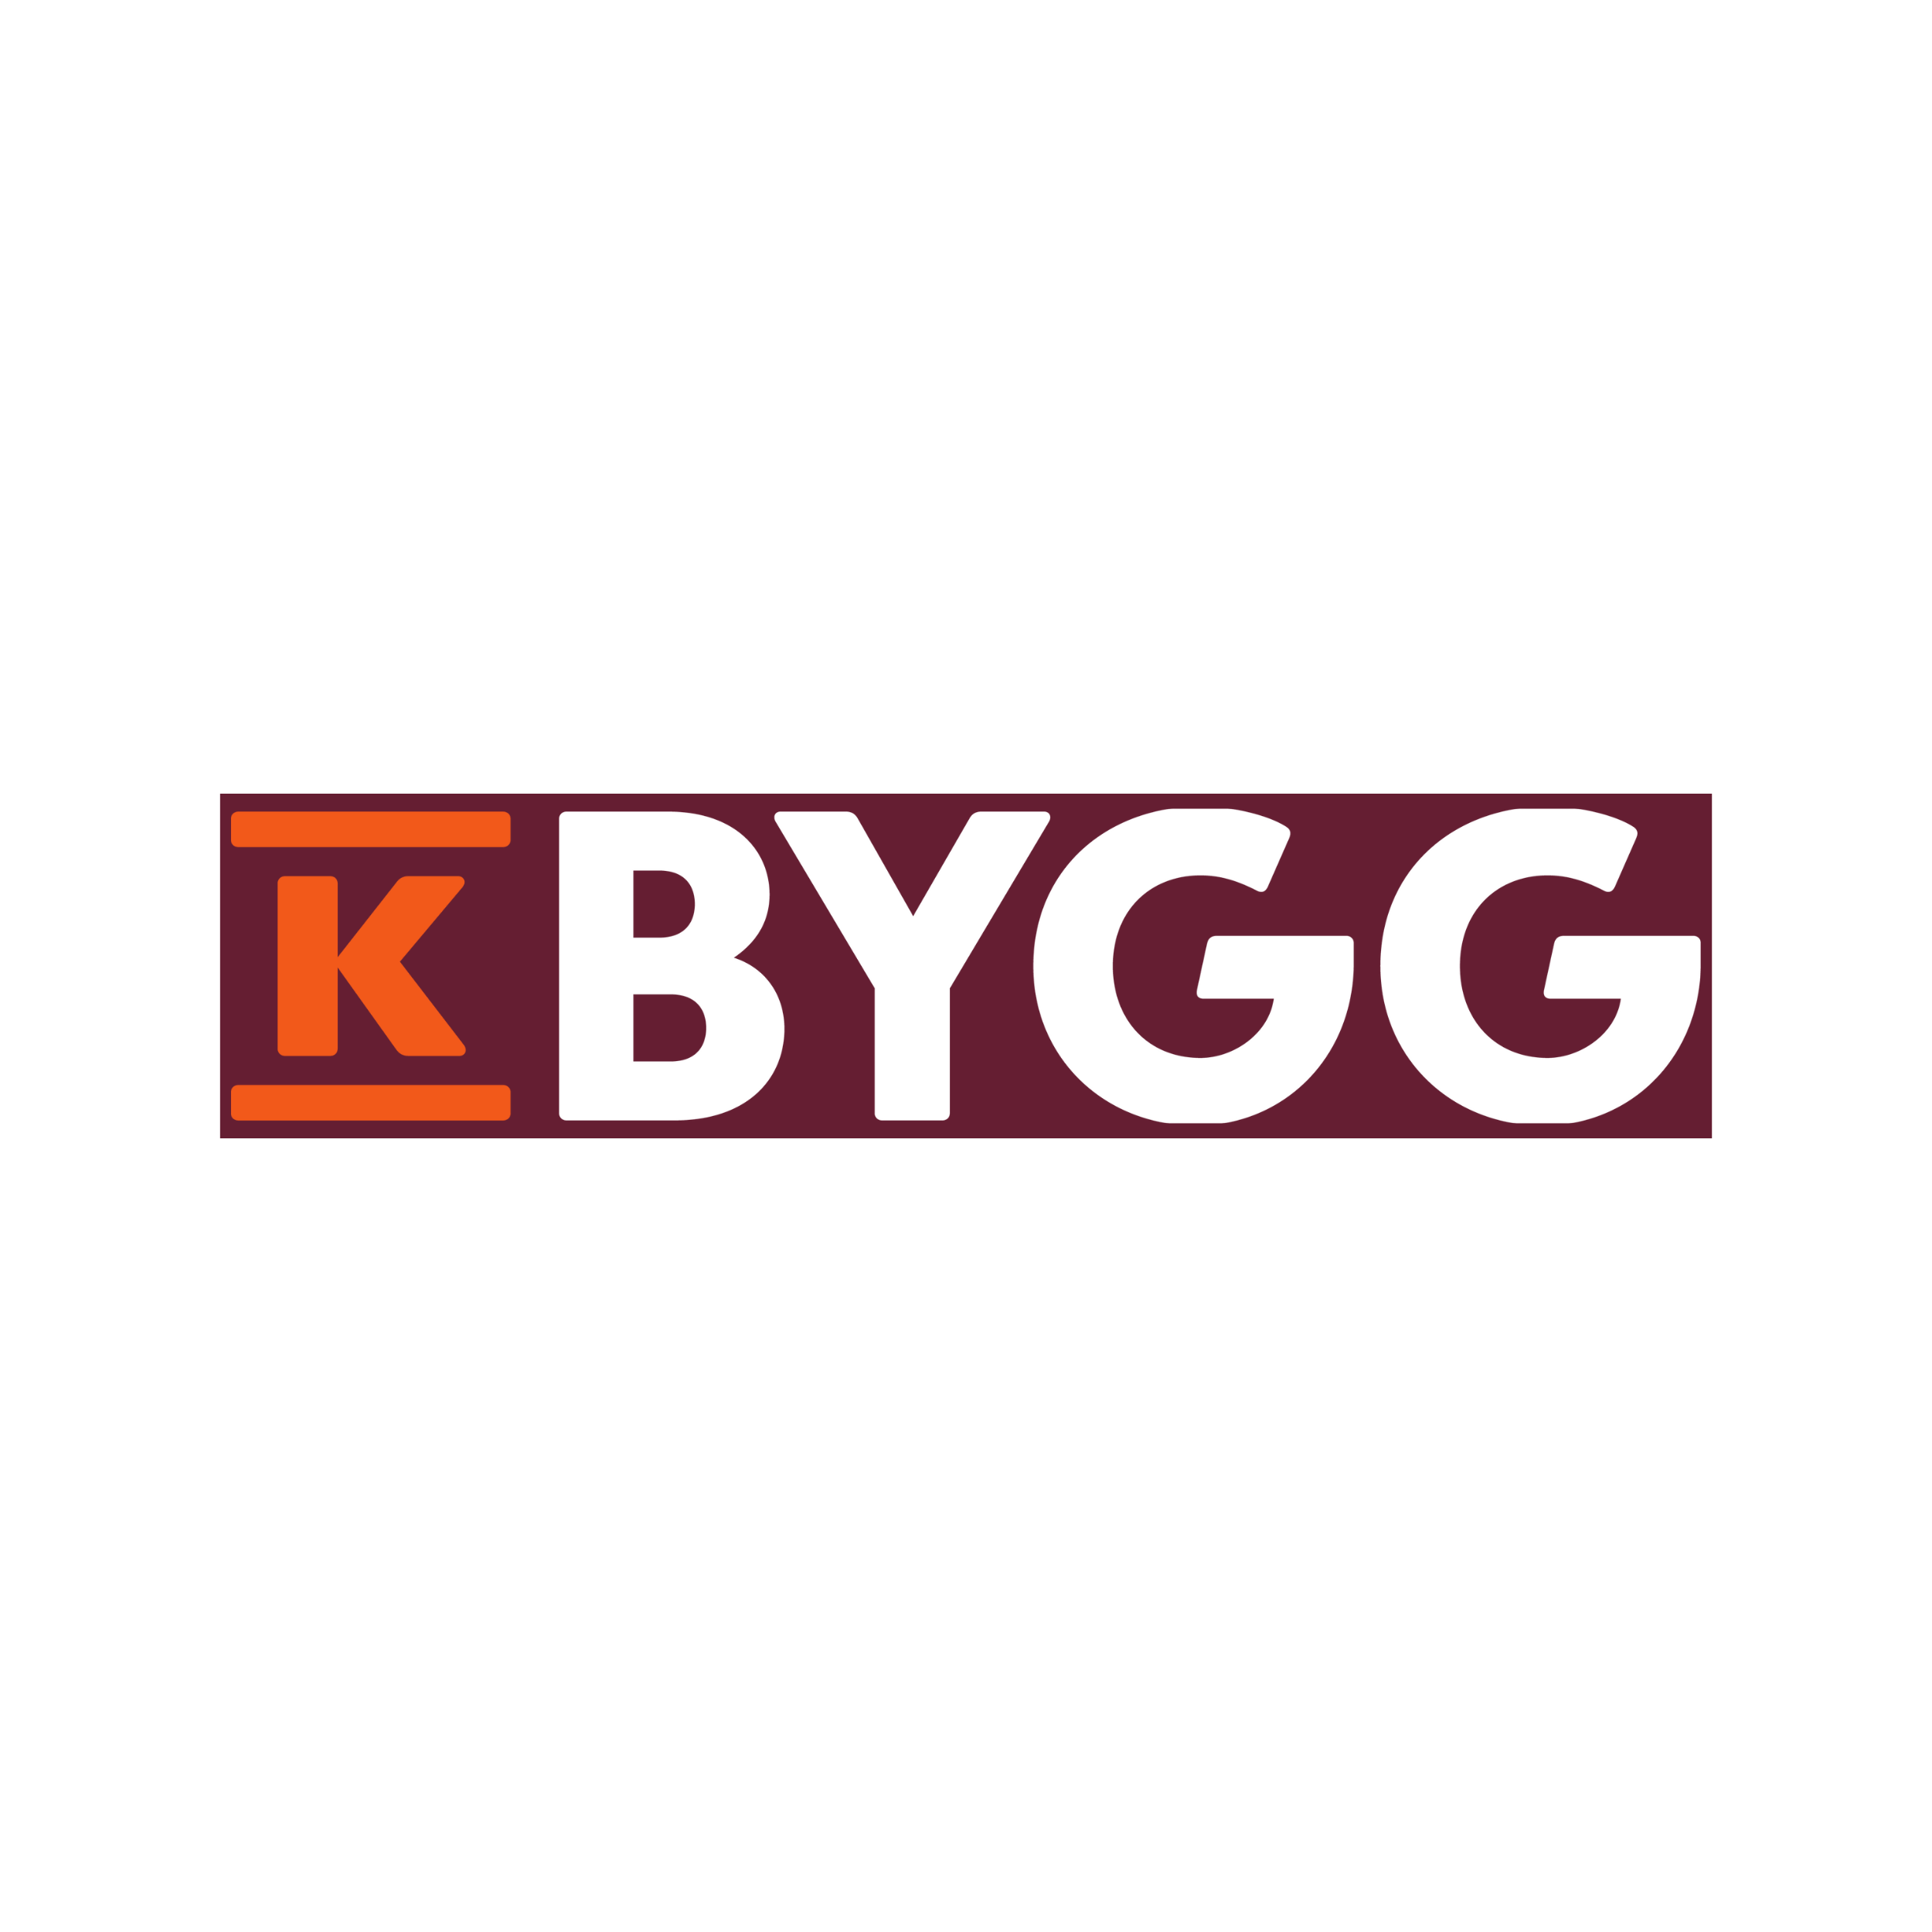 K-Bygg